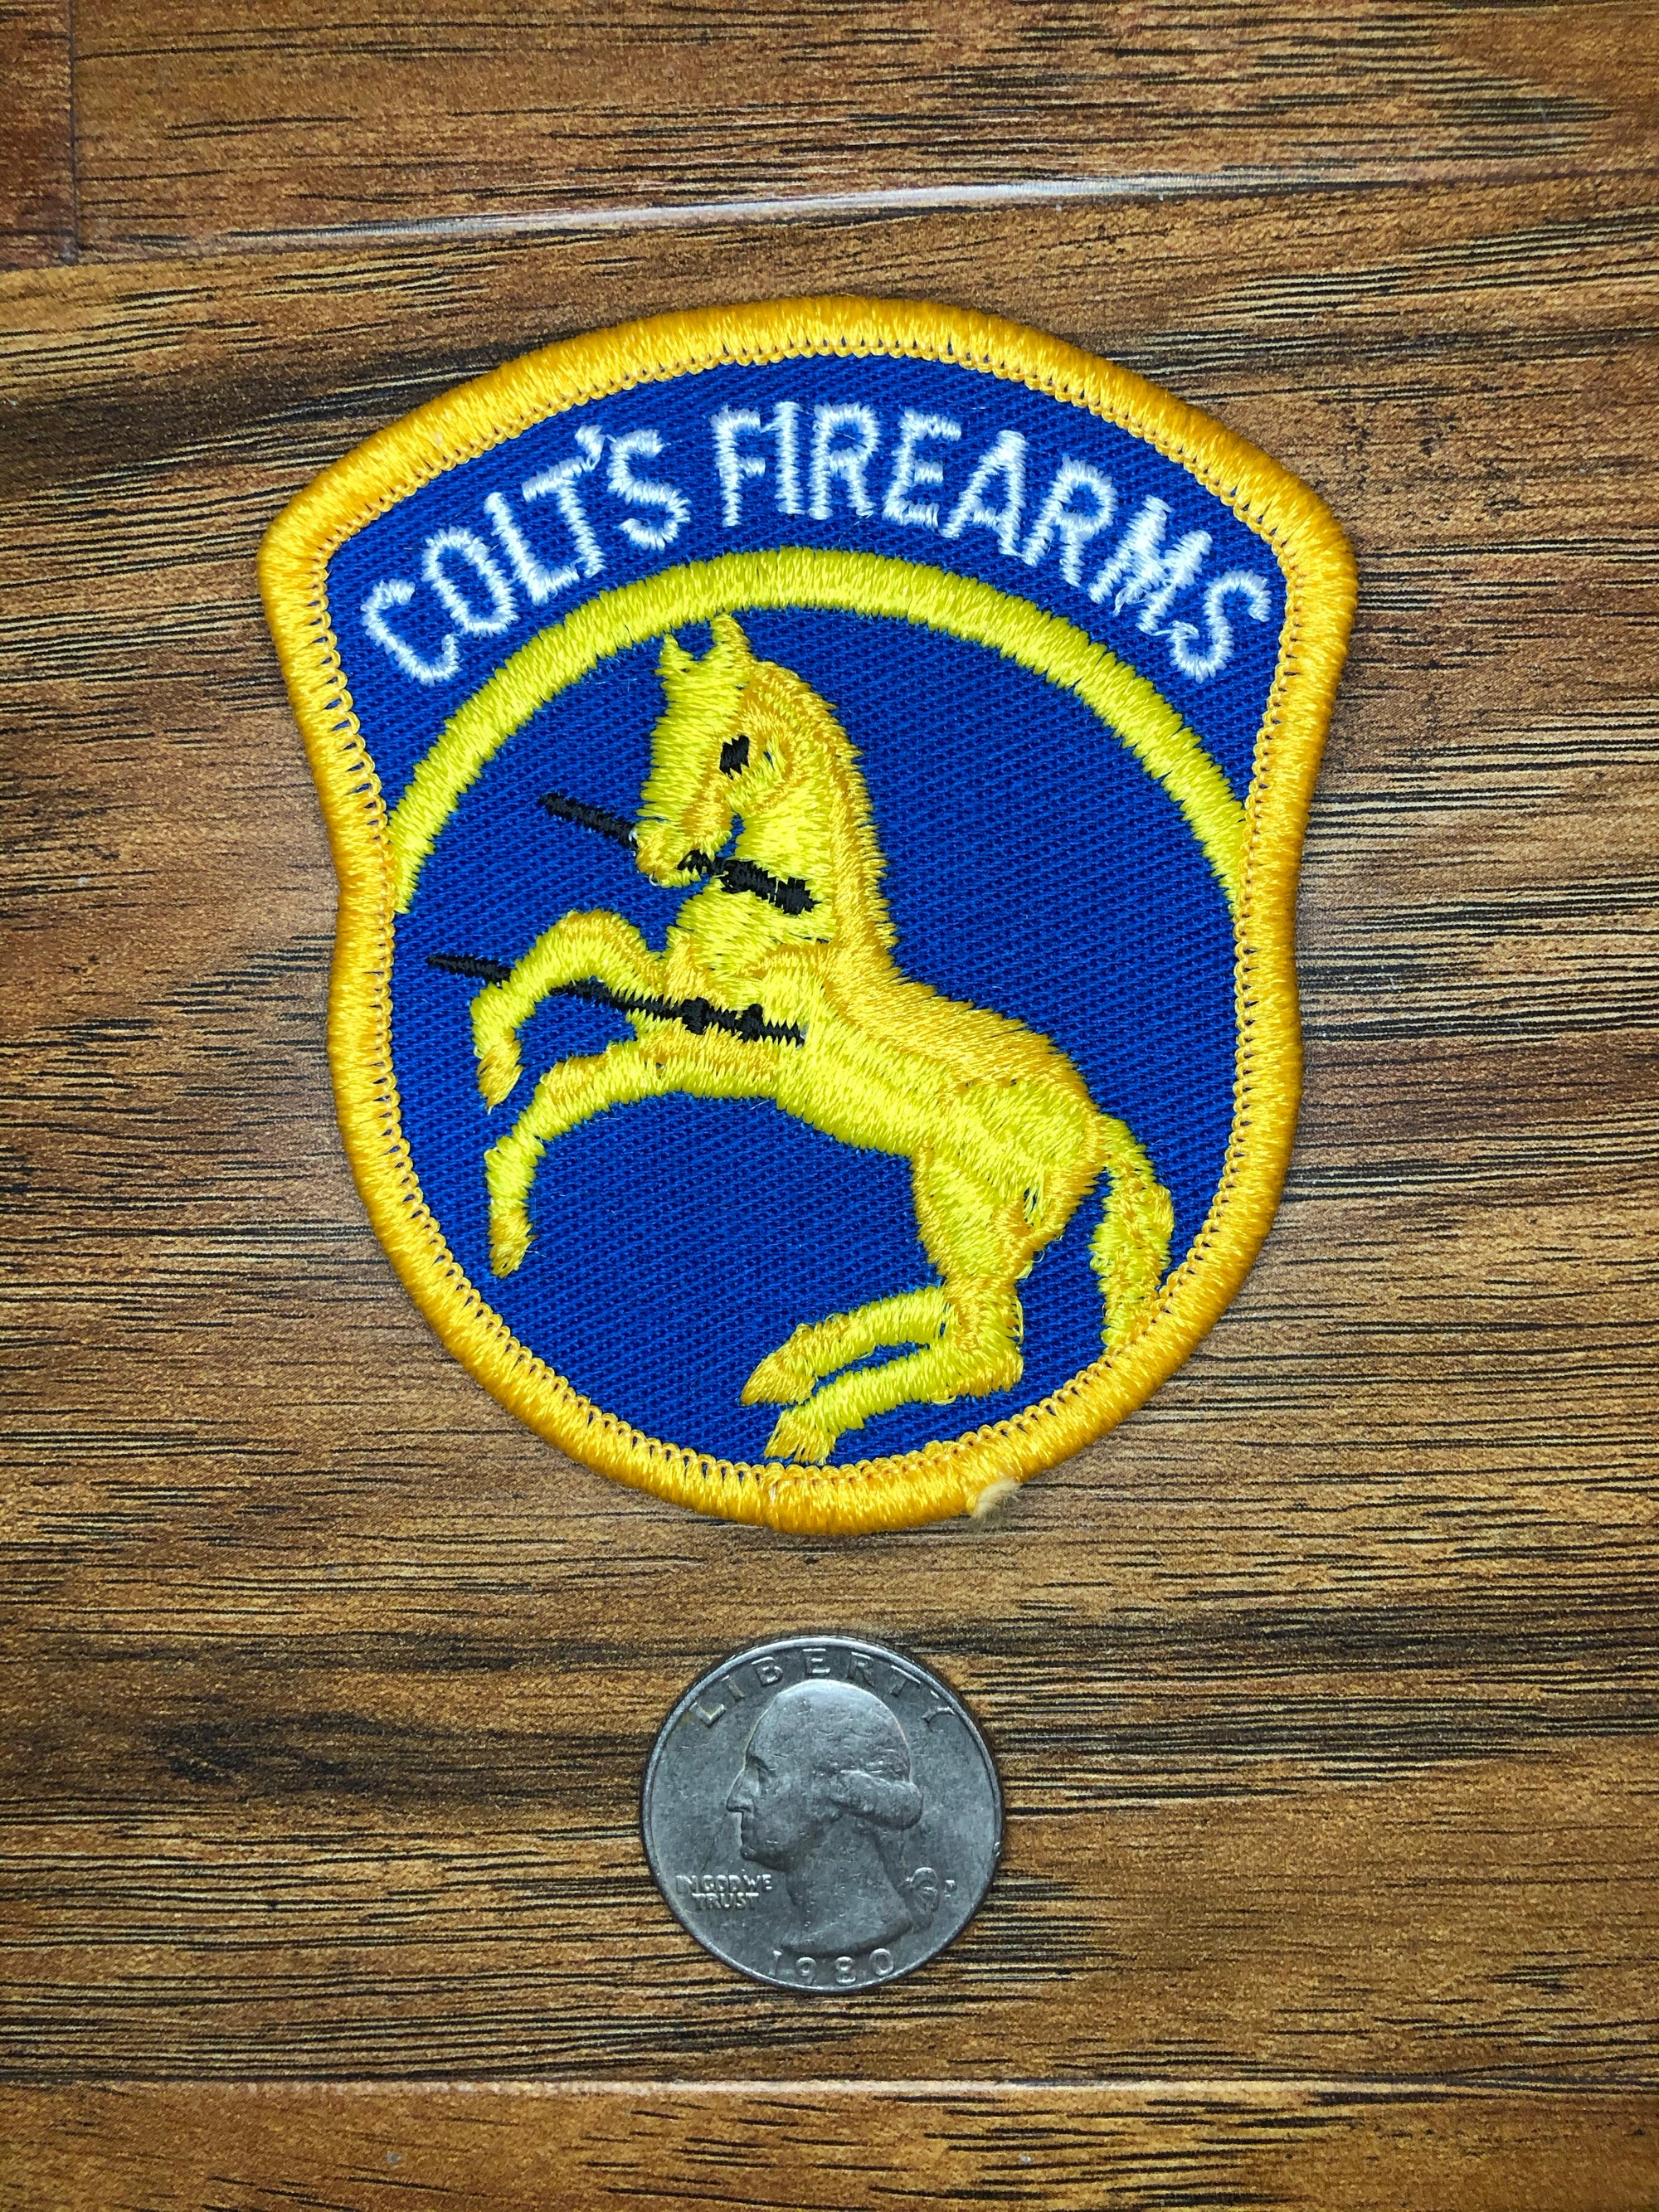 Vintage Colt Firearms